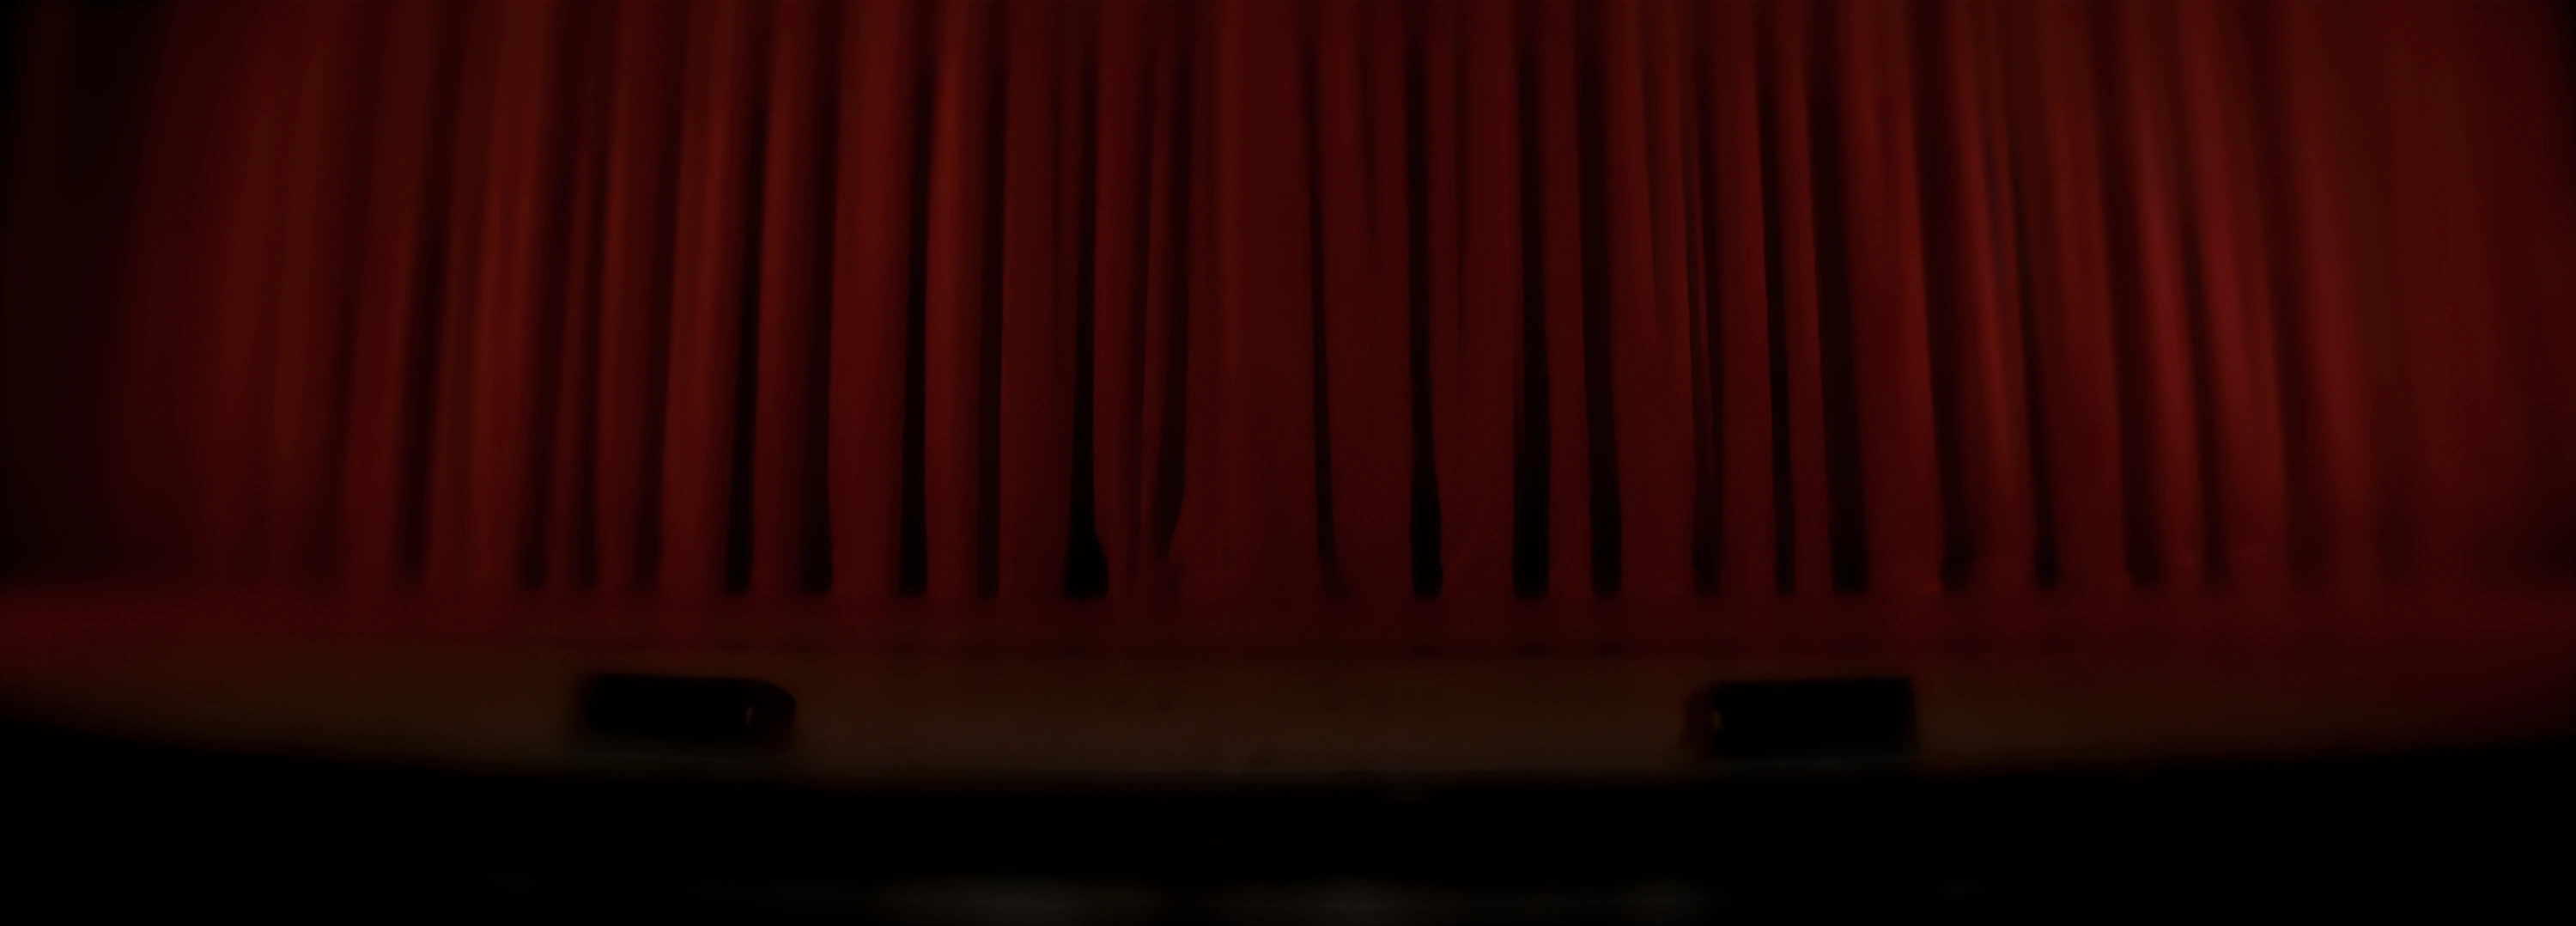 un rideau rouge sur une scène de théâtre